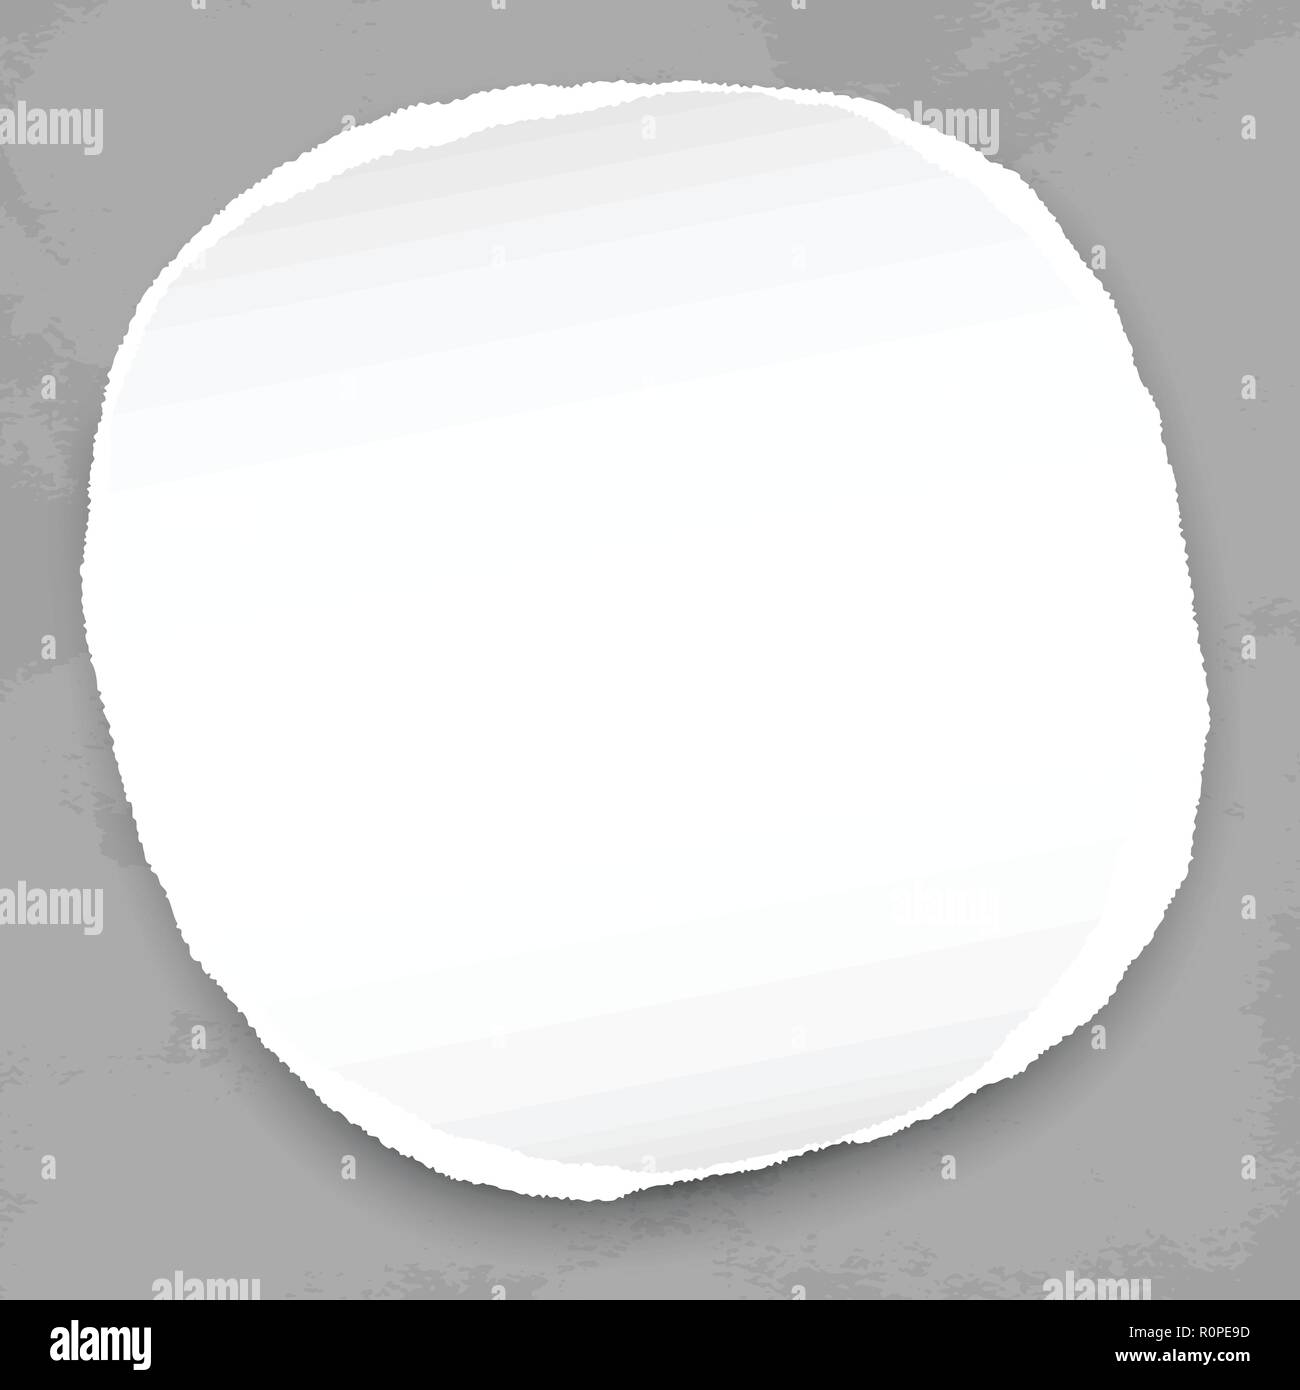 White round di carta strappata con ombra per testo o messaggio su sfondo grigio scuro. Illustrazione Vettoriale. Illustrazione Vettoriale